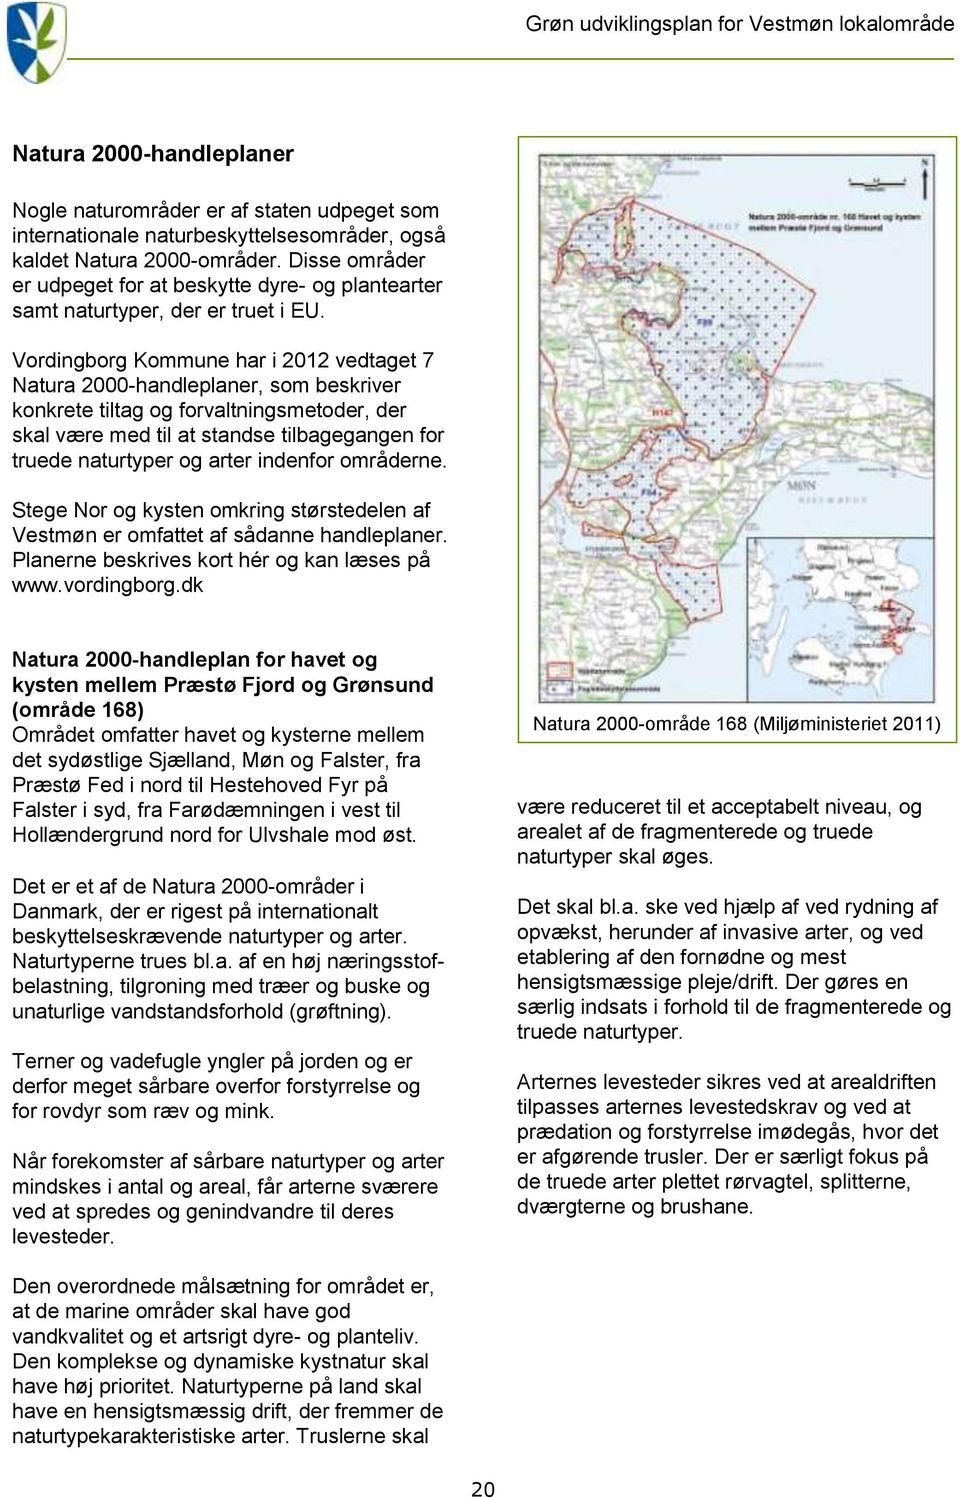 Vordingborg Kommune har i 2012 vedtaget 7 Natura 2000-handleplaner, som beskriver konkrete tiltag og forvaltningsmetoder, der skal være med til at standse tilbagegangen for truede naturtyper og arter